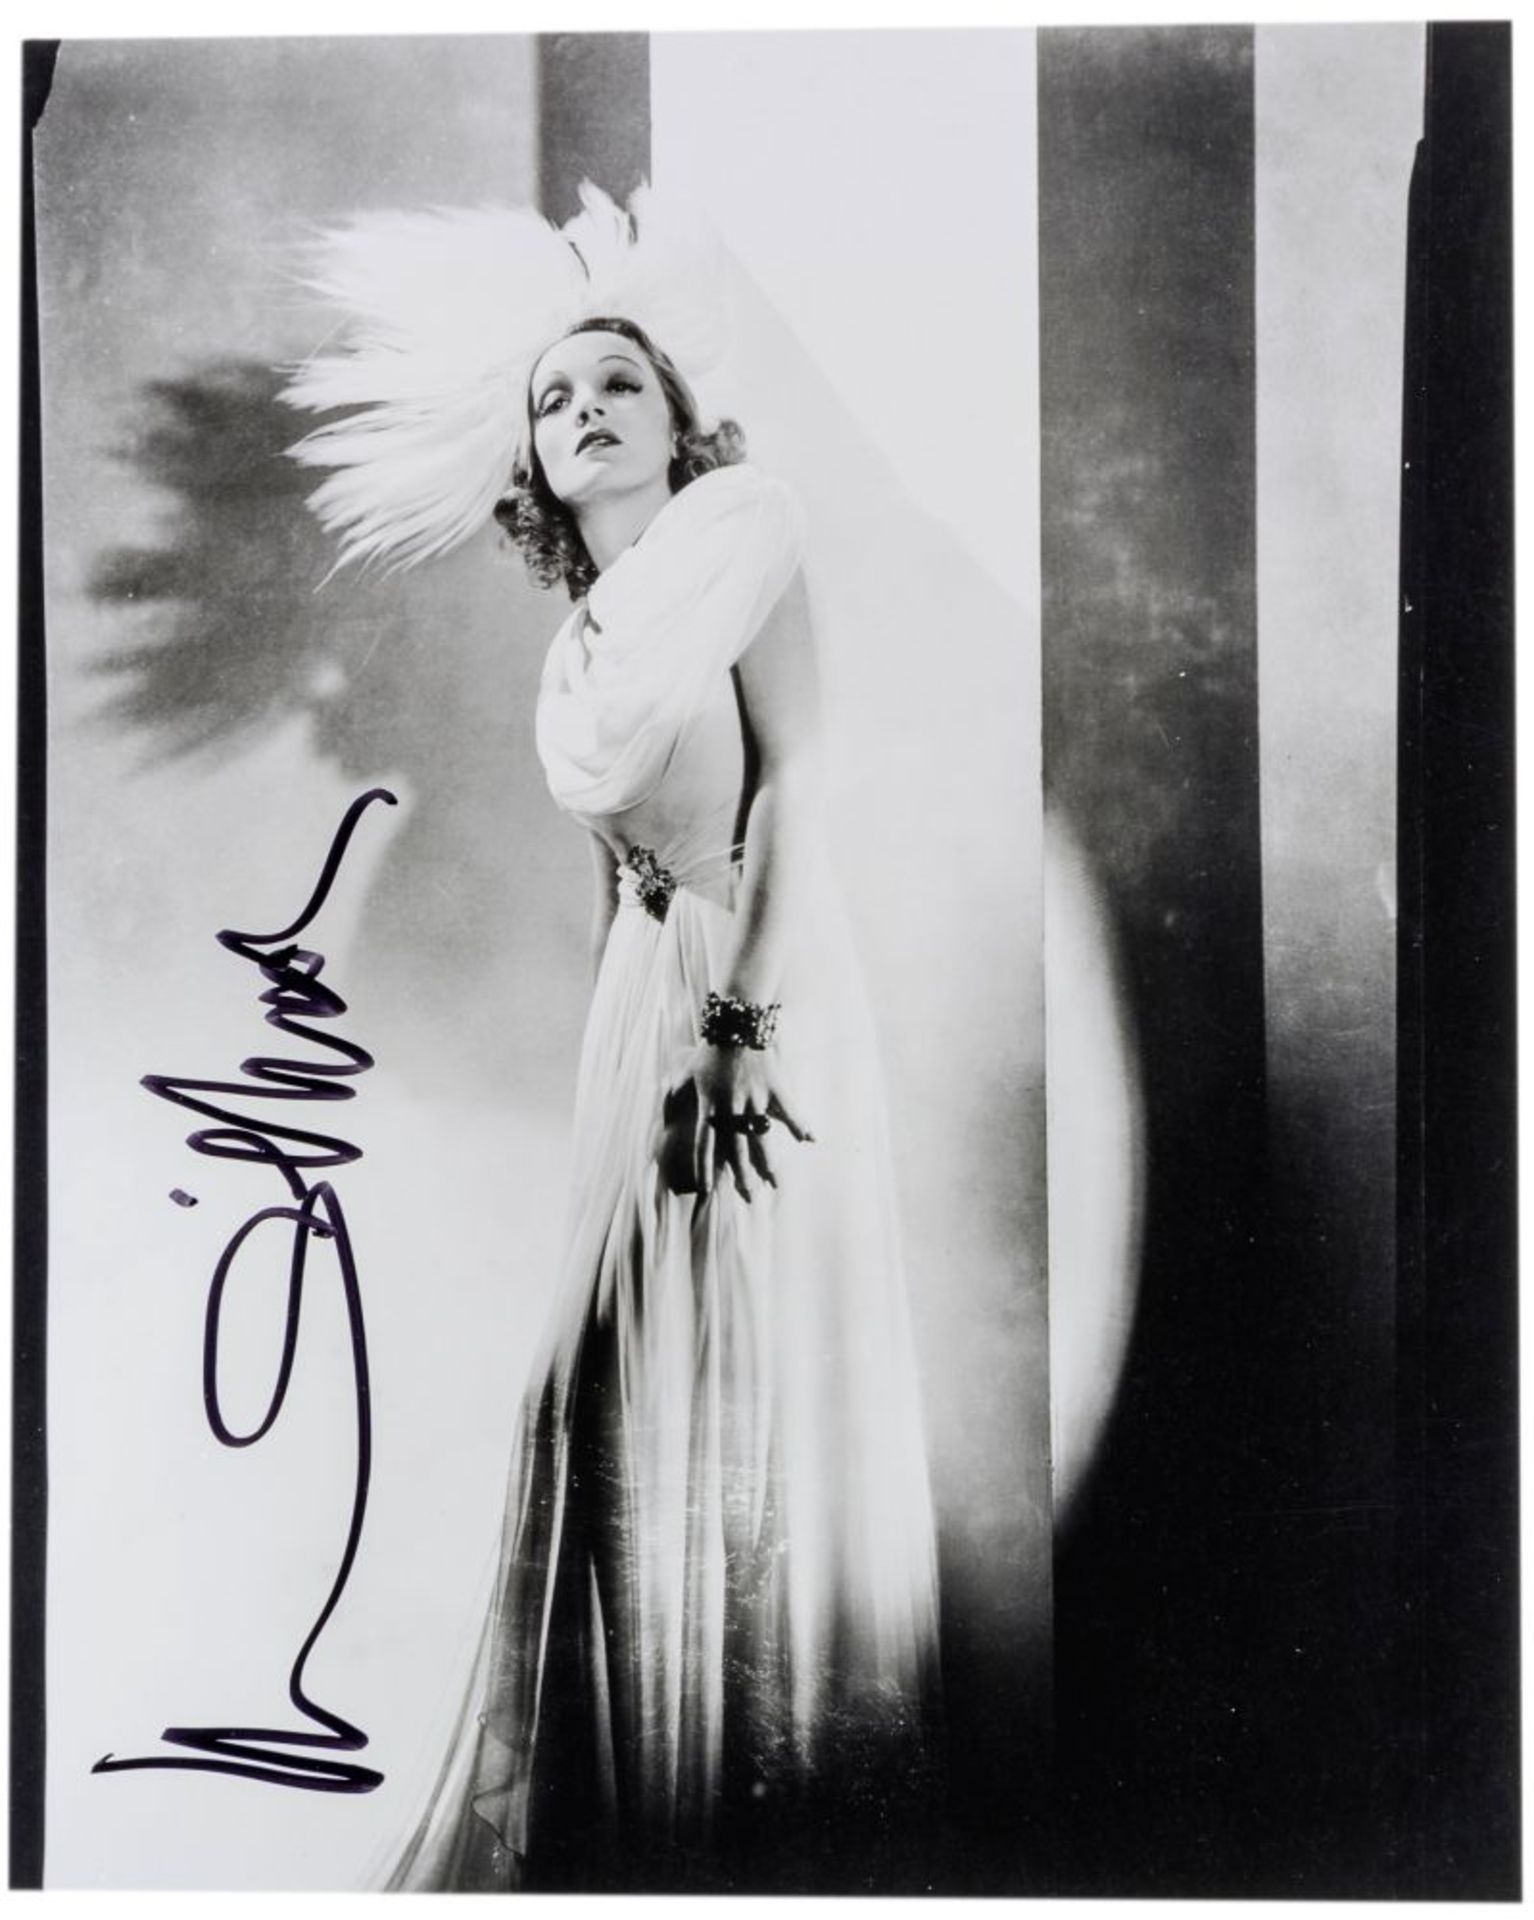 Dietrich, Marlene. Eigenhändige Signatur mit schwarzem Filzstift auf Porträt-Photographie.